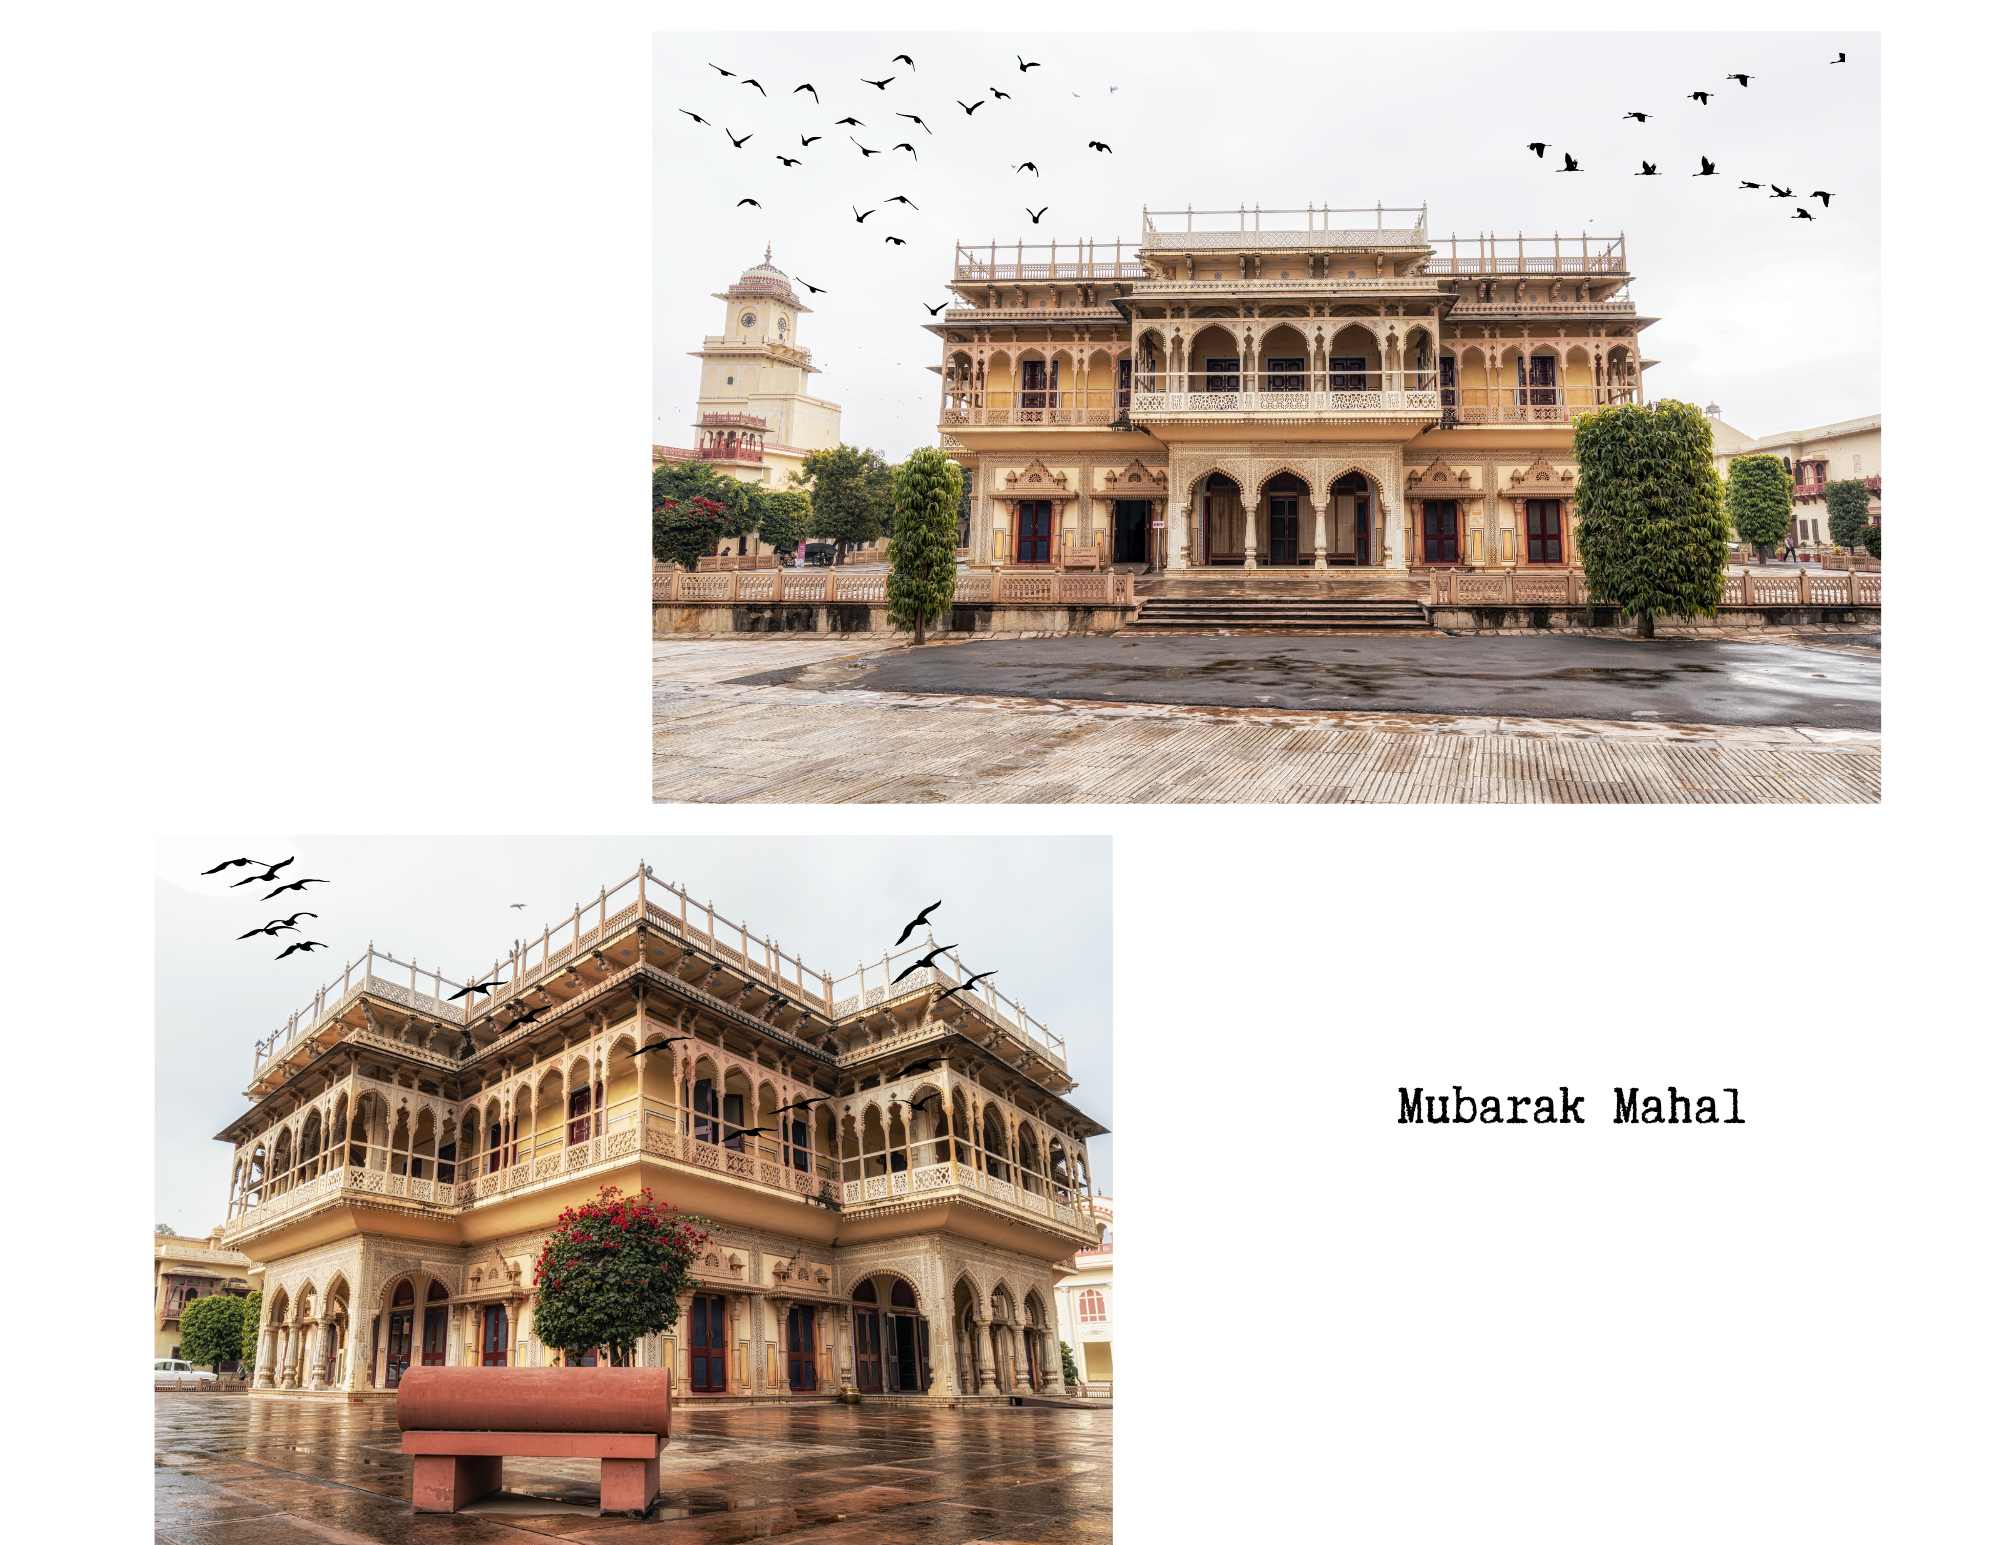 mubarak-mahal city palace